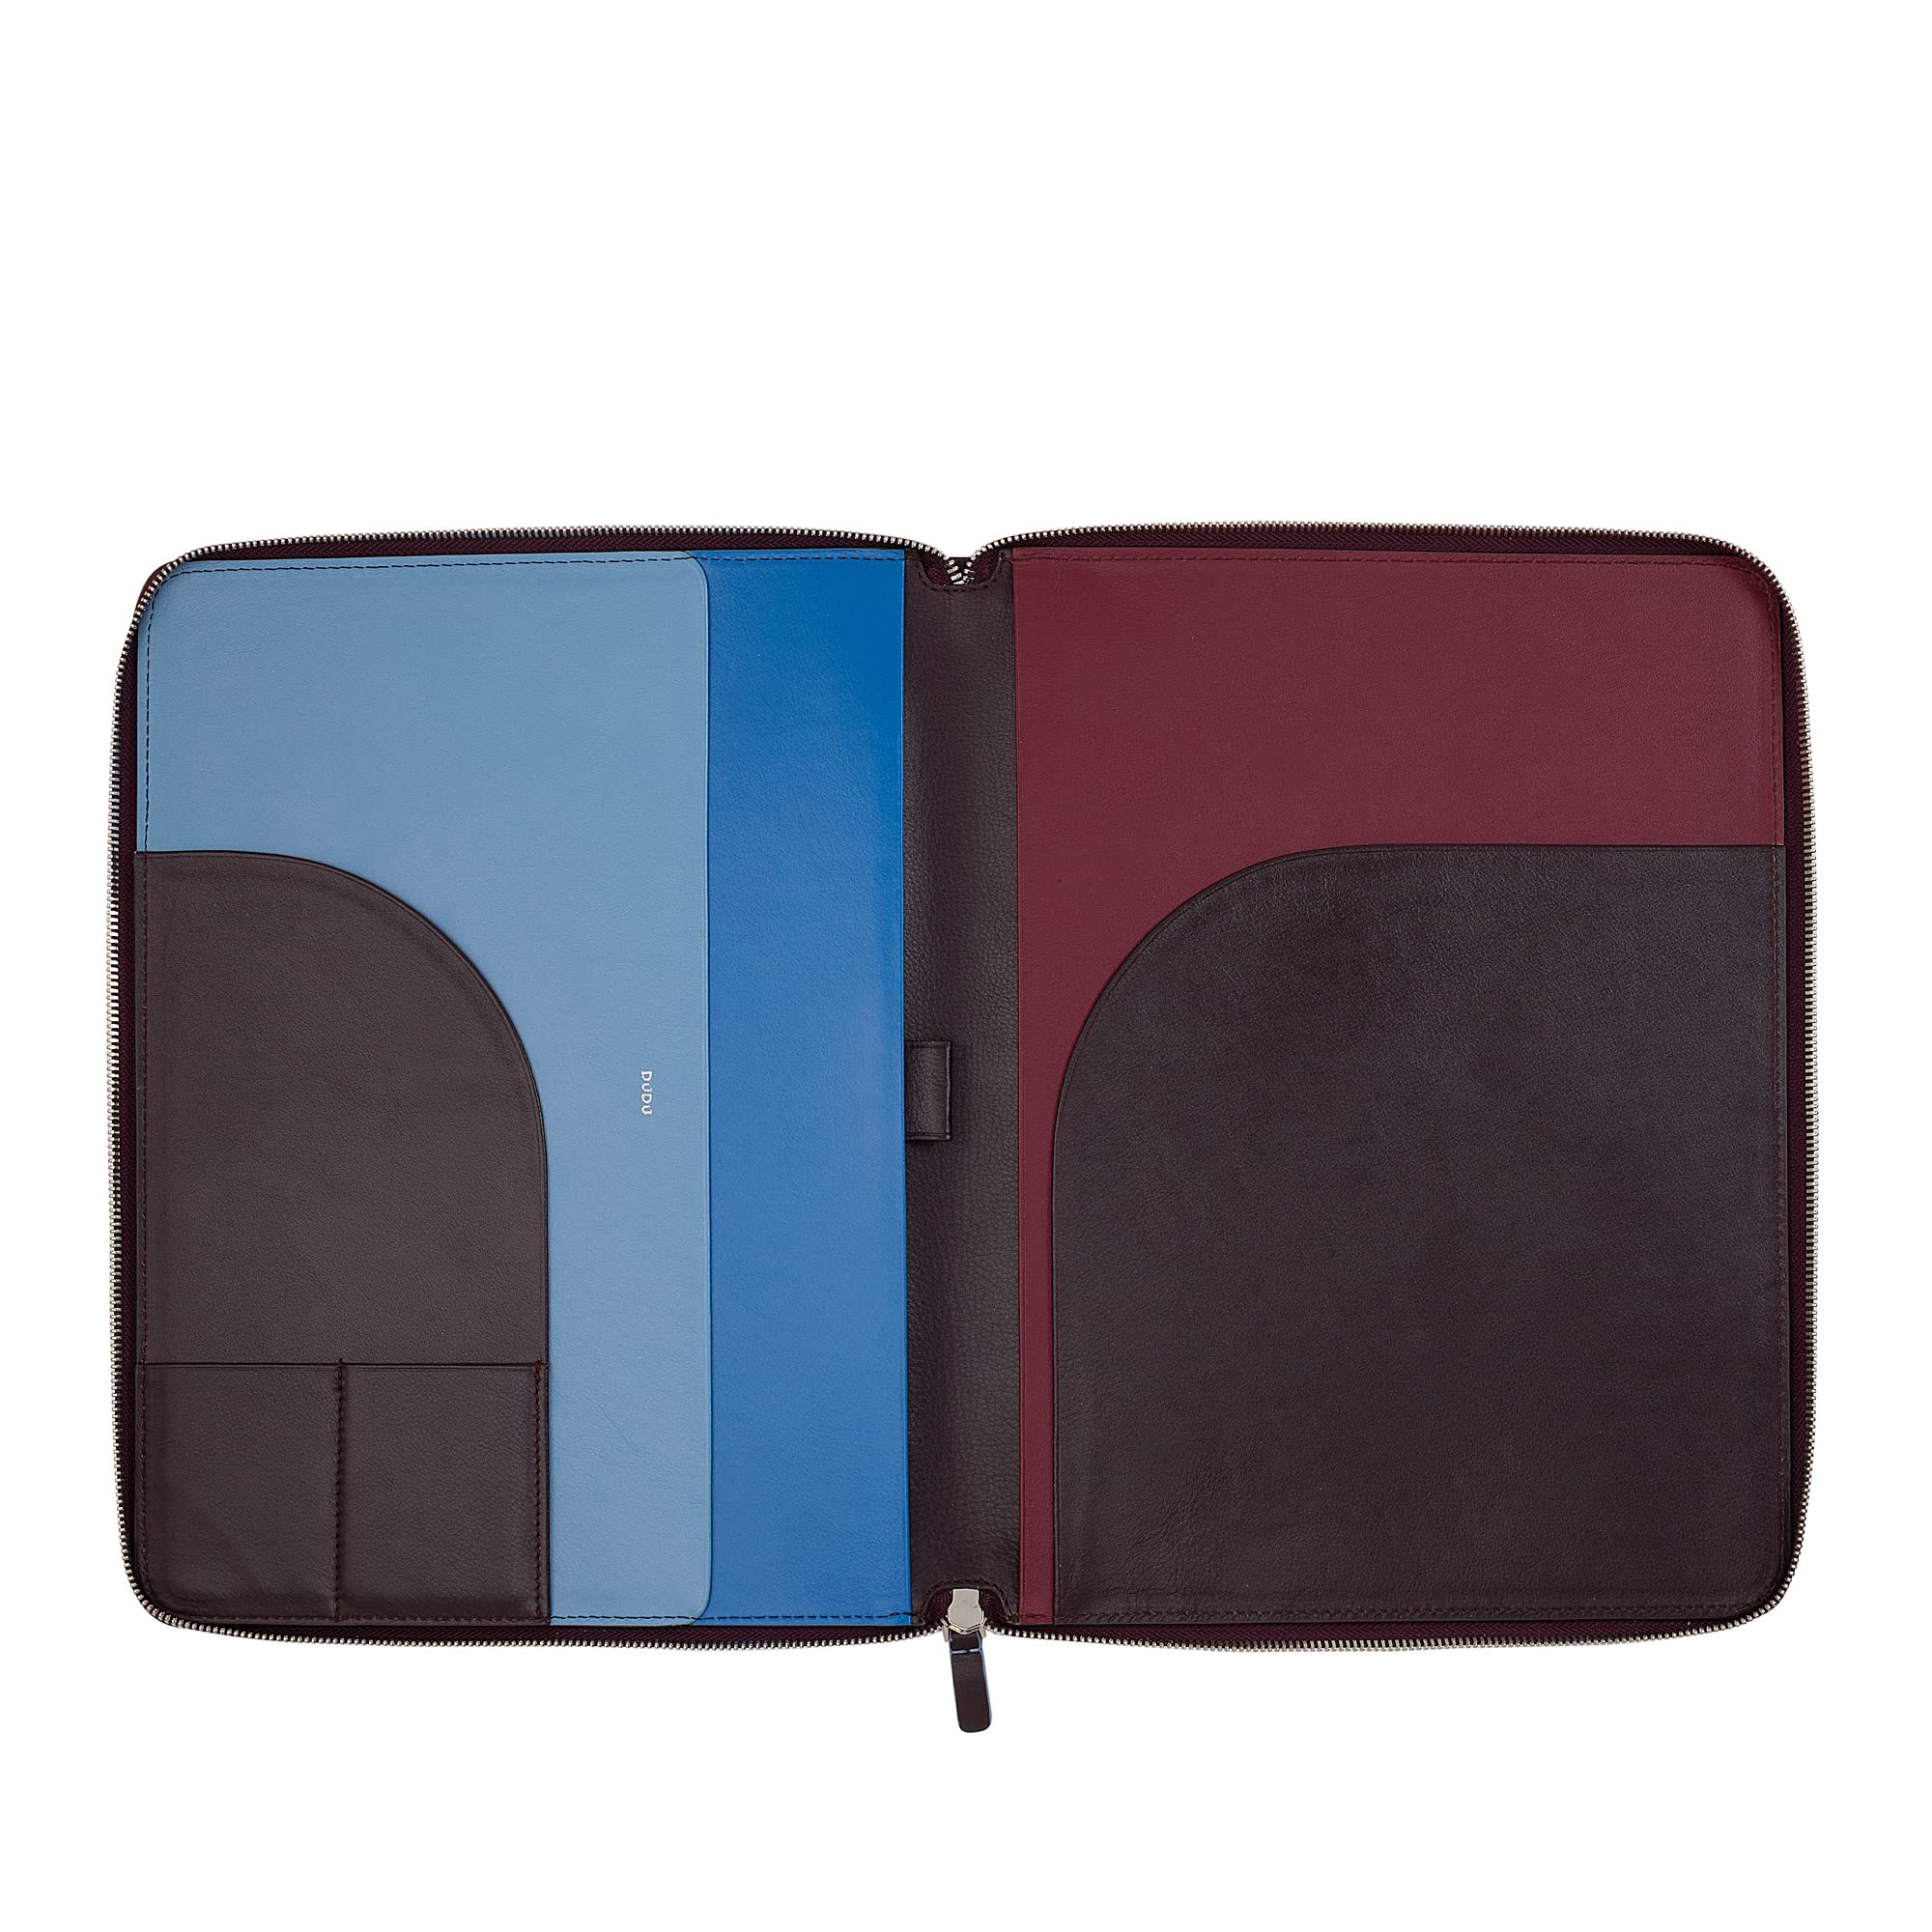 DUDU Die farbenfrohe A4 Aktentasche aus weichem Leder mit praktischem Metallreißverschluss und iPad-Tablet-Fach. Elegant und raffiniert, ideal für Ihre Arbeit. Burgundy